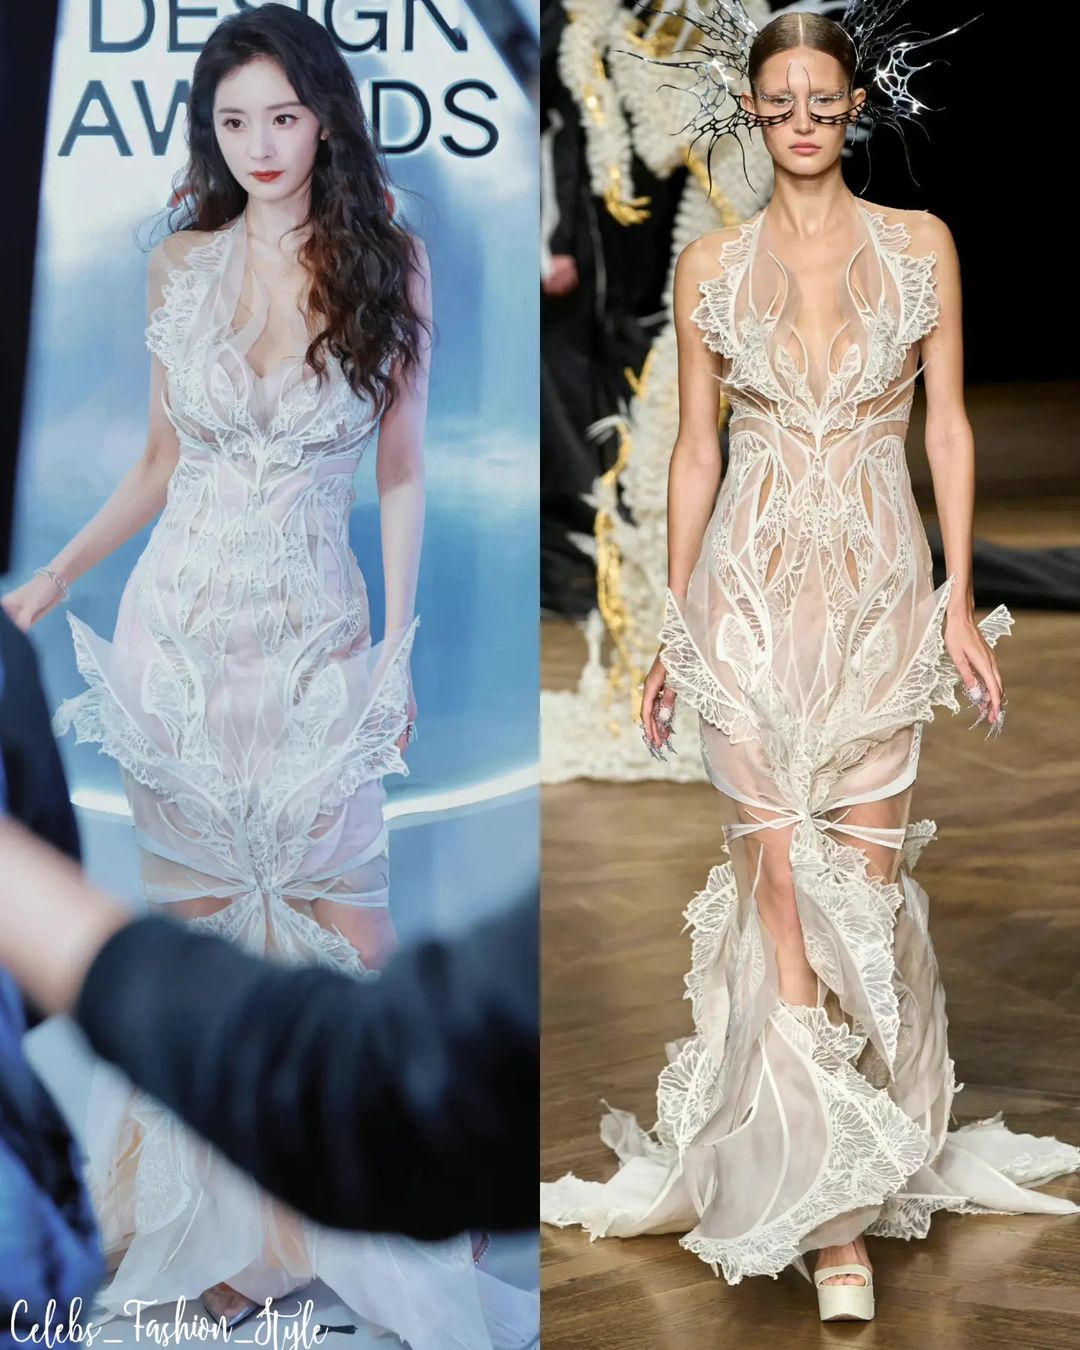 Dương Mịch tái xuất đẹp đỉnh tại sự kiện thời trang, thể hiện sự tinh tế qua 1 chi tiết trên váy - Ảnh 4.